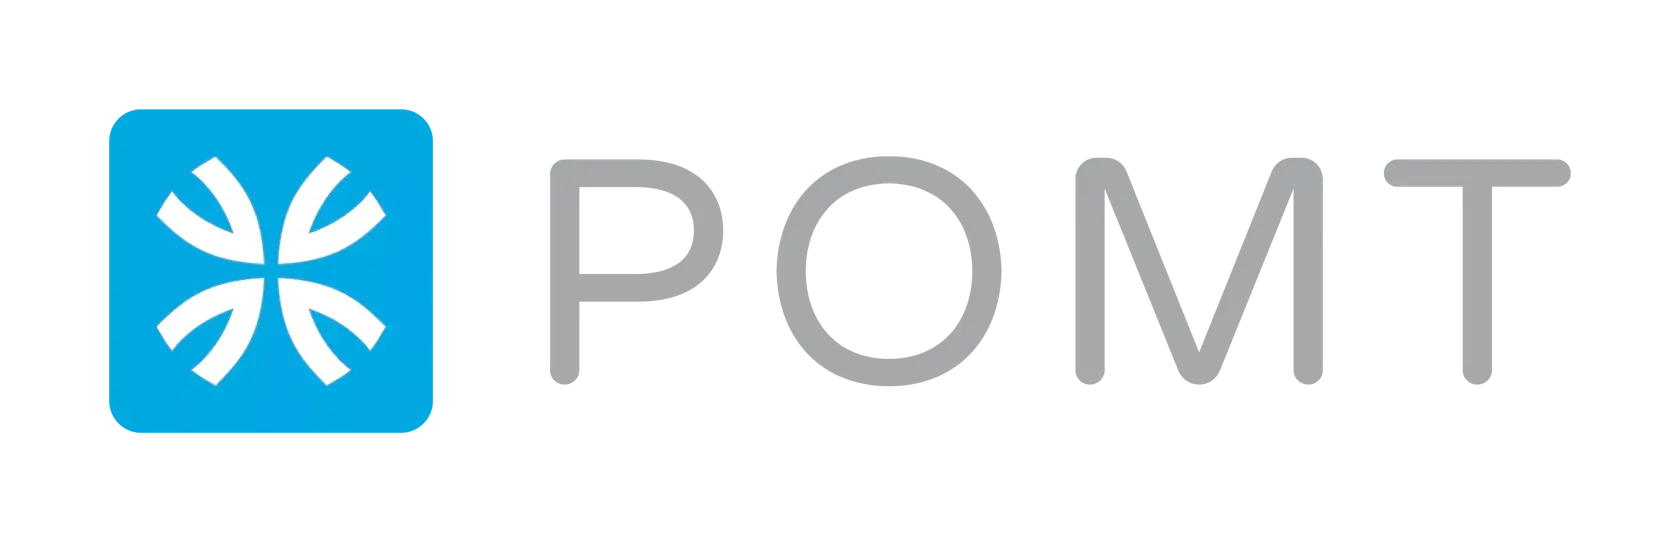 POMT logo